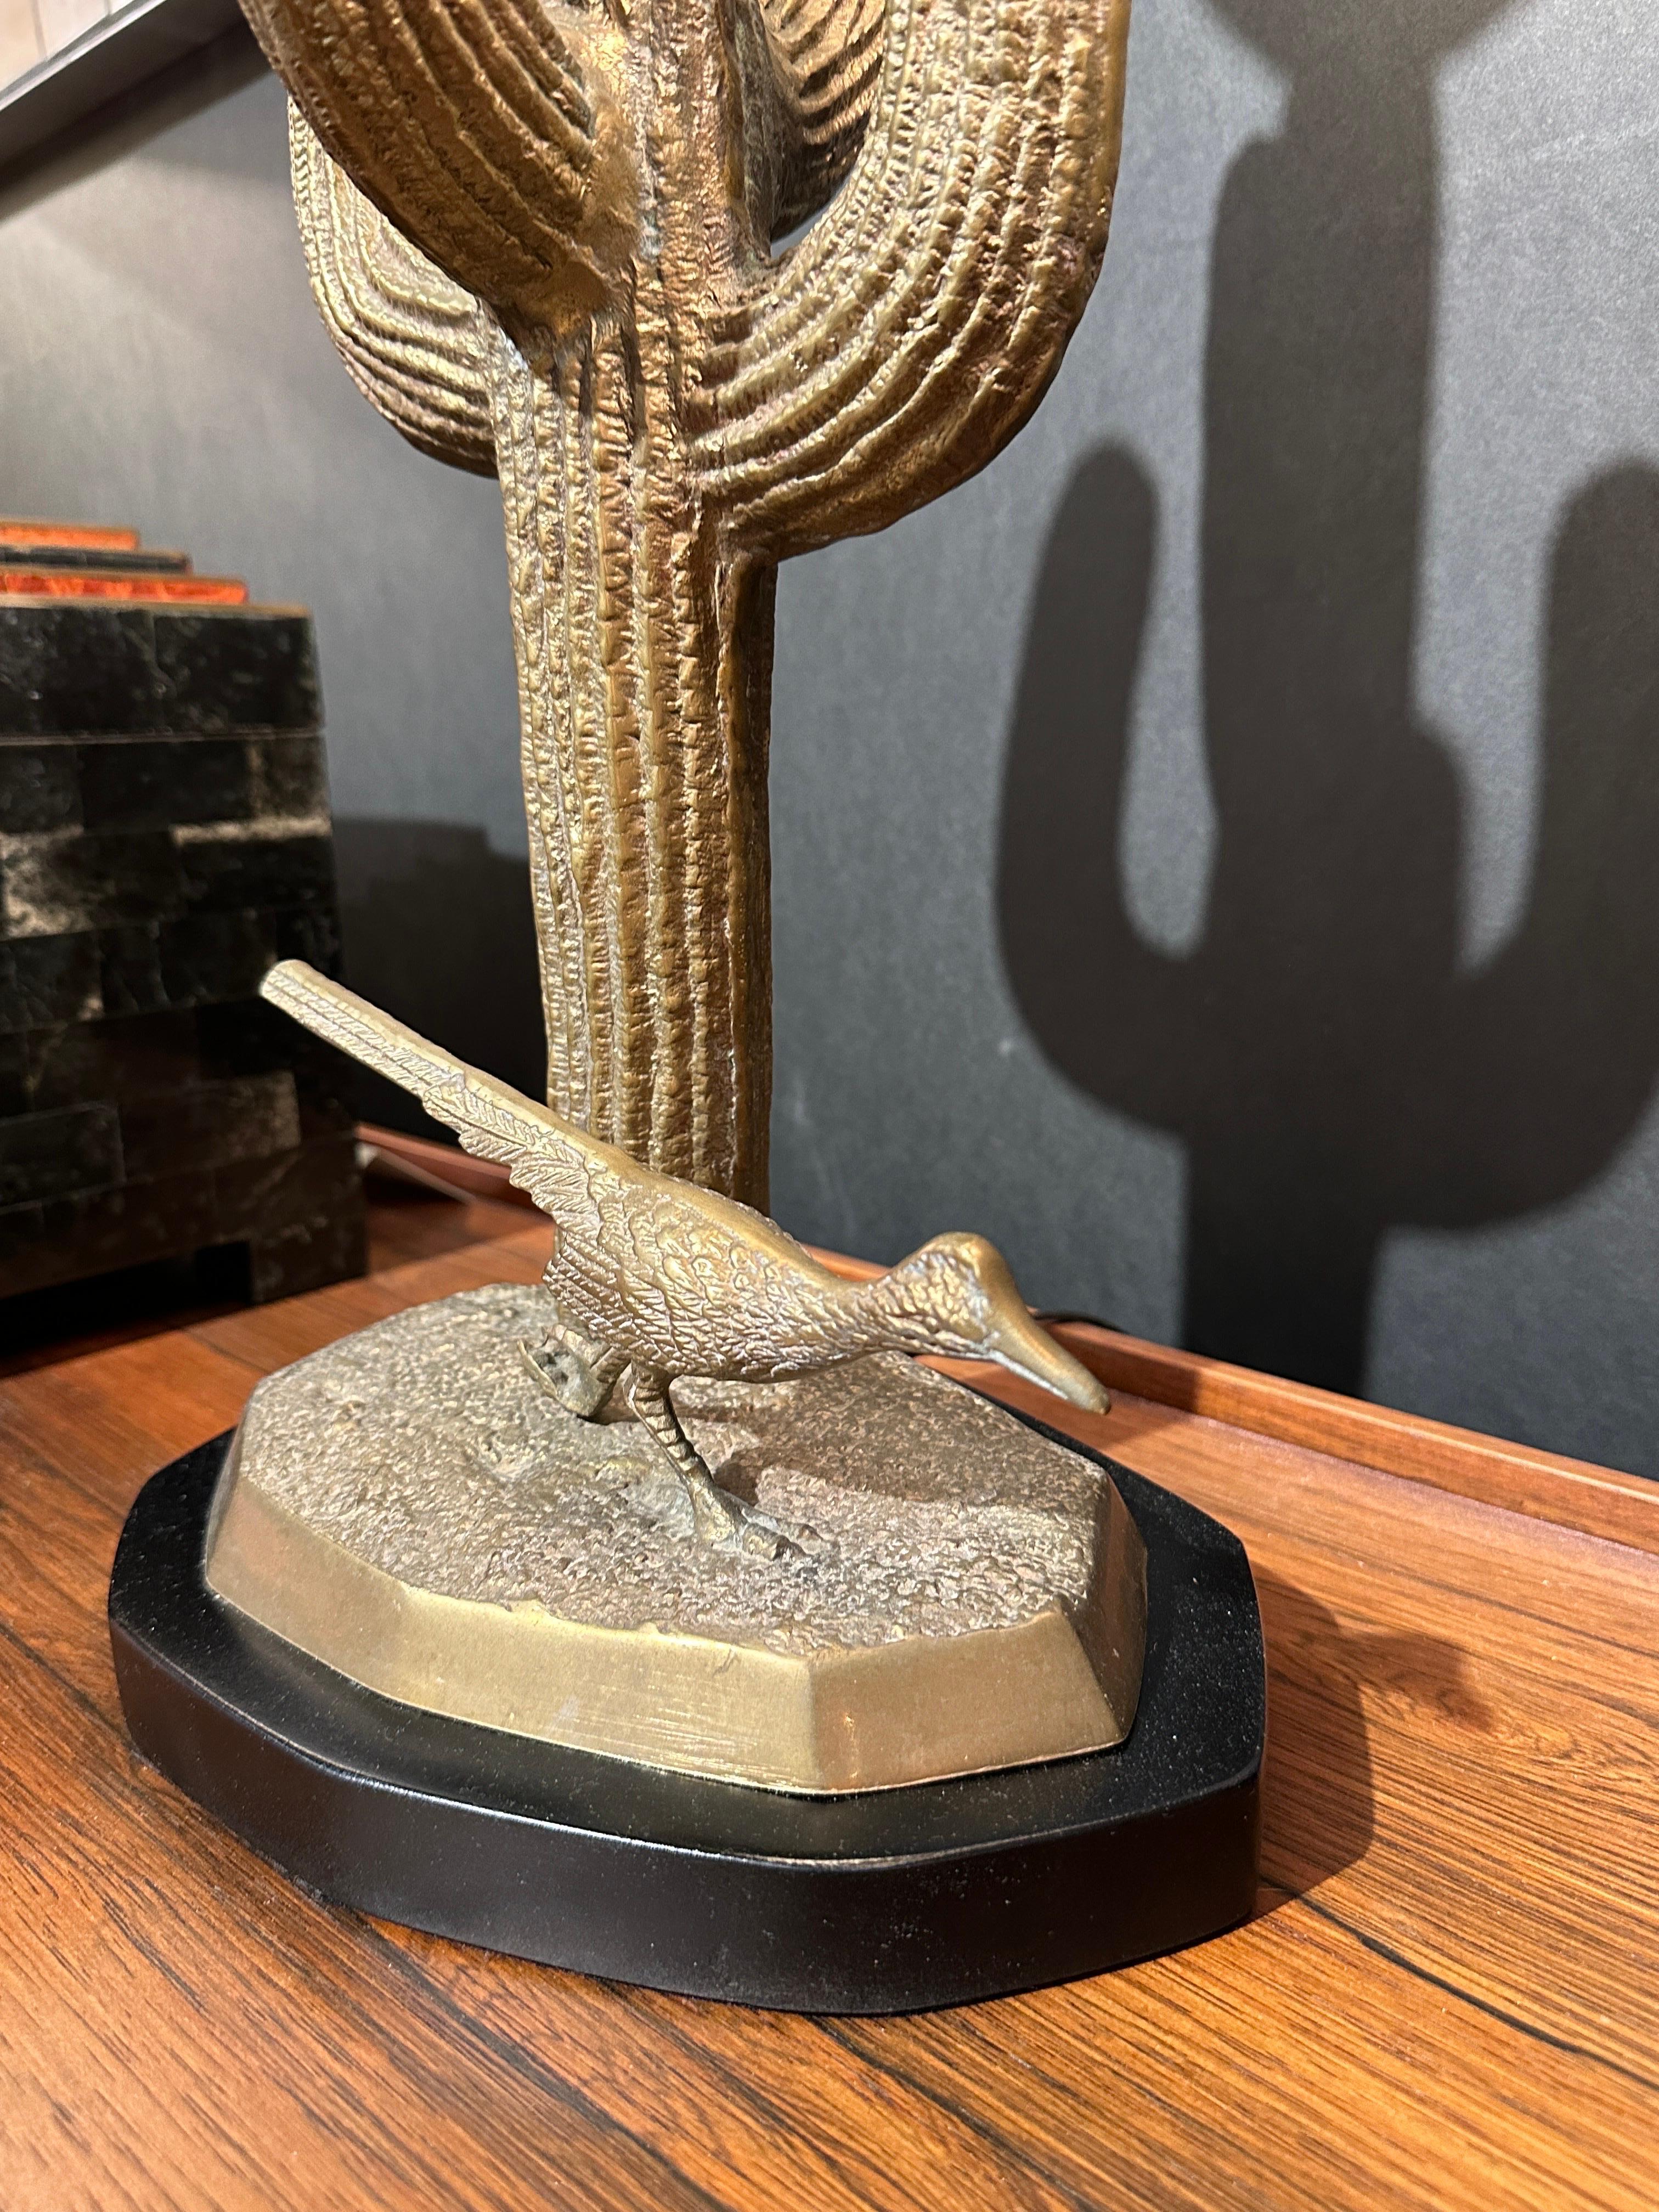 Cast Small Brass Saguaro Cactus Sculpture Lamp For Sale